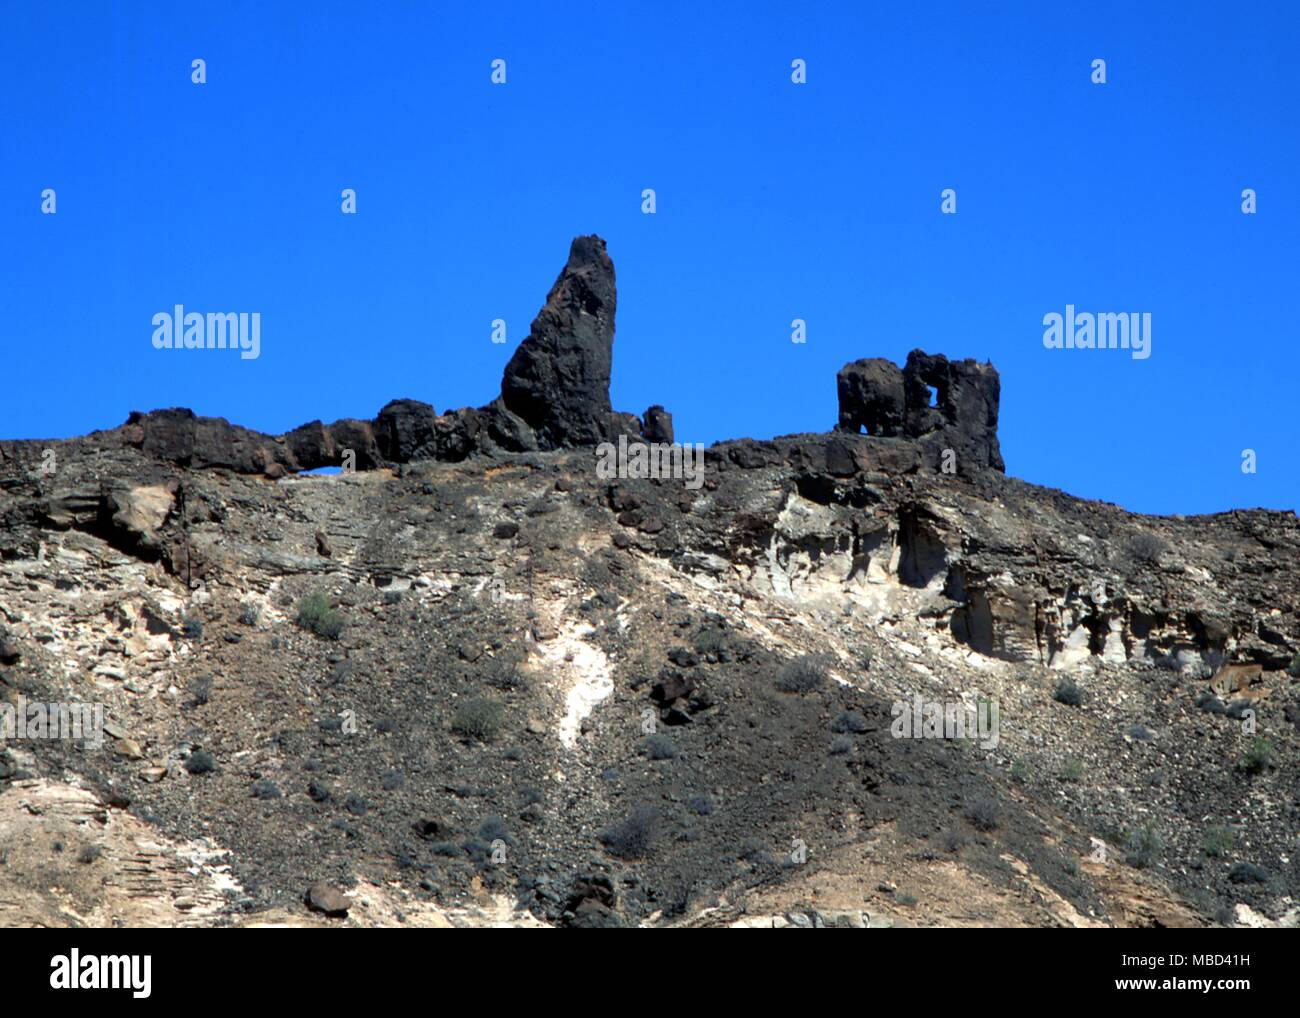 Il affioramenti rocciosi del Gran Canaria, nelle Canarie, che sono rivendicati da alcuni come i resti del continente perduto di Atlantide Foto Stock